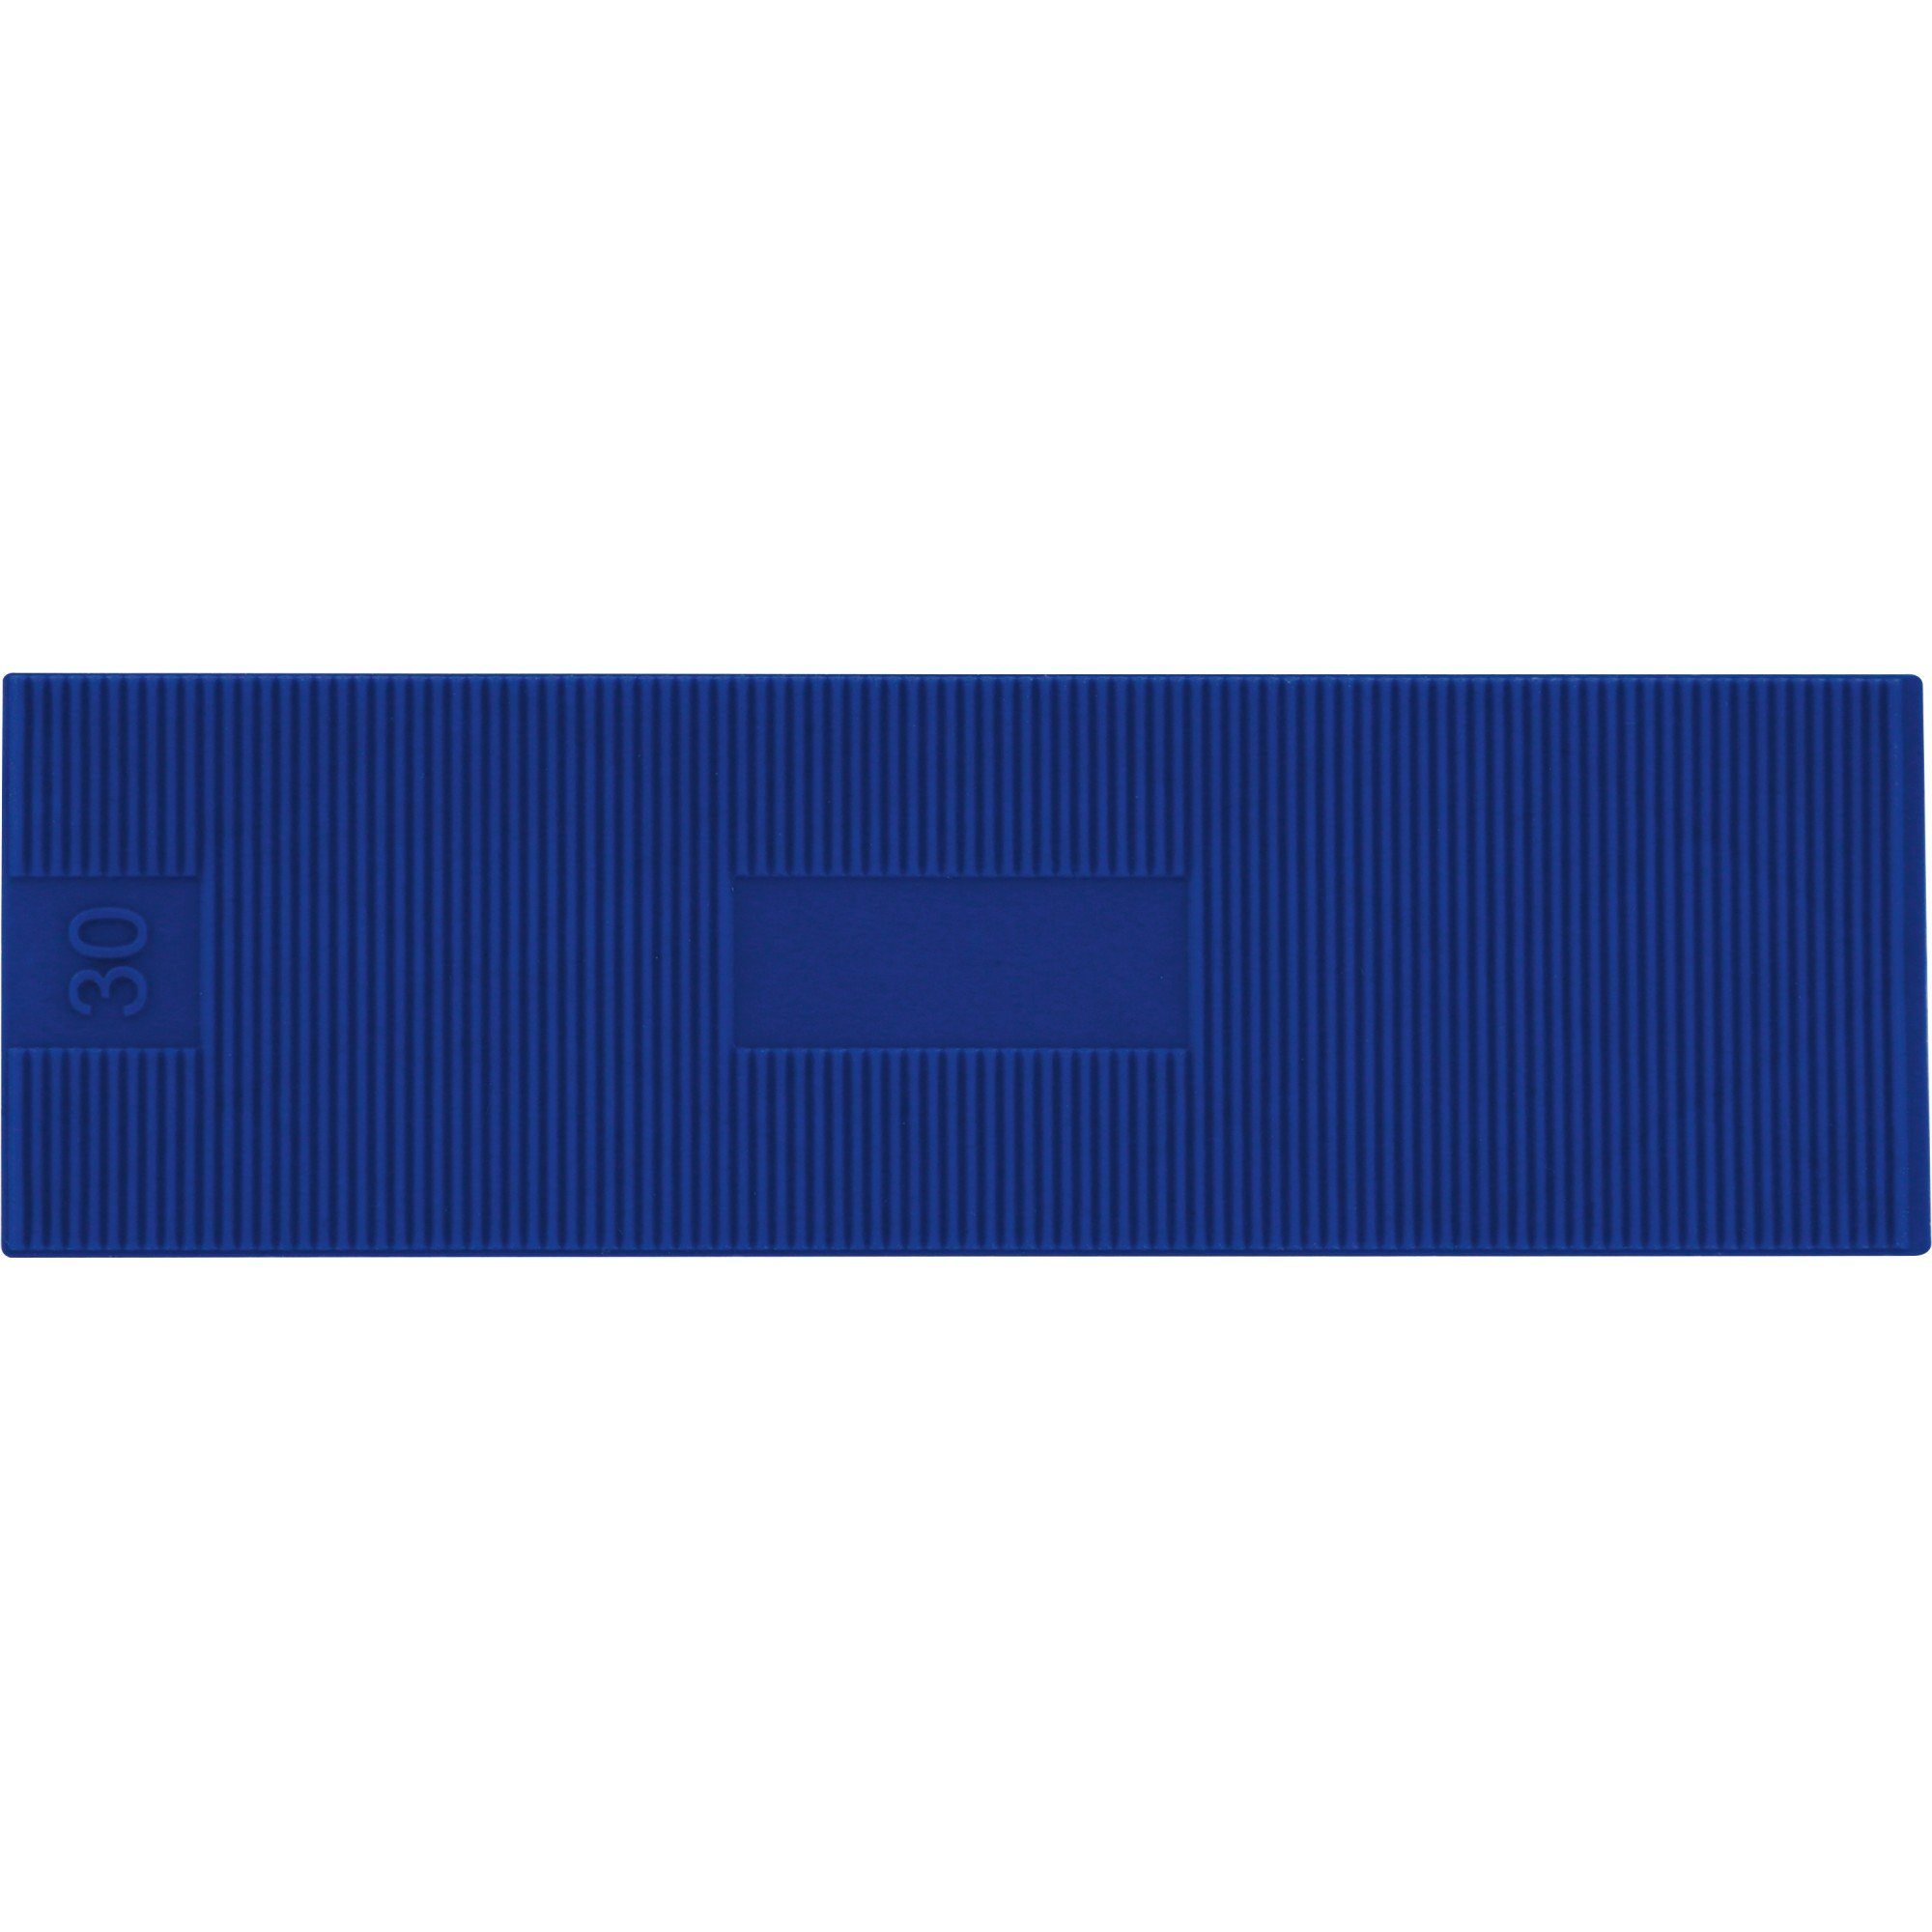 Triuso Verlegekeil PP Verglasungsklötze Montagekeile Unterlegplättchen 100 x 30mm blau, (70 Stück), hohe Tragfähigkeit - Druckfestigkeit 80 n/mm²